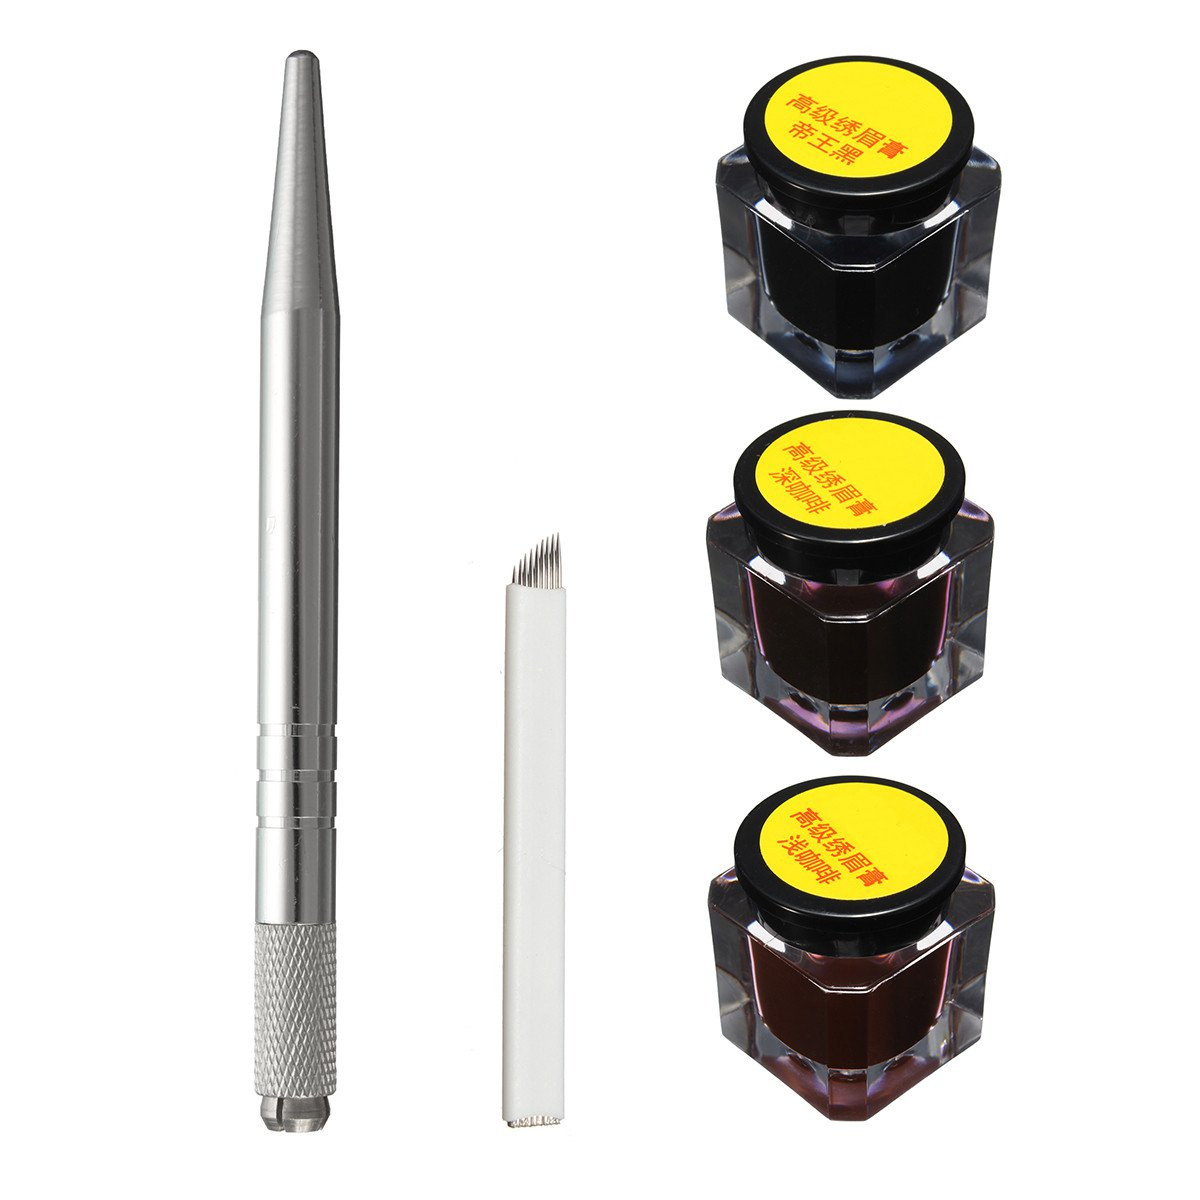 

Complete Тату Microblading Ручка Kits Manual Ручка Бровей Наборы для вставки игл